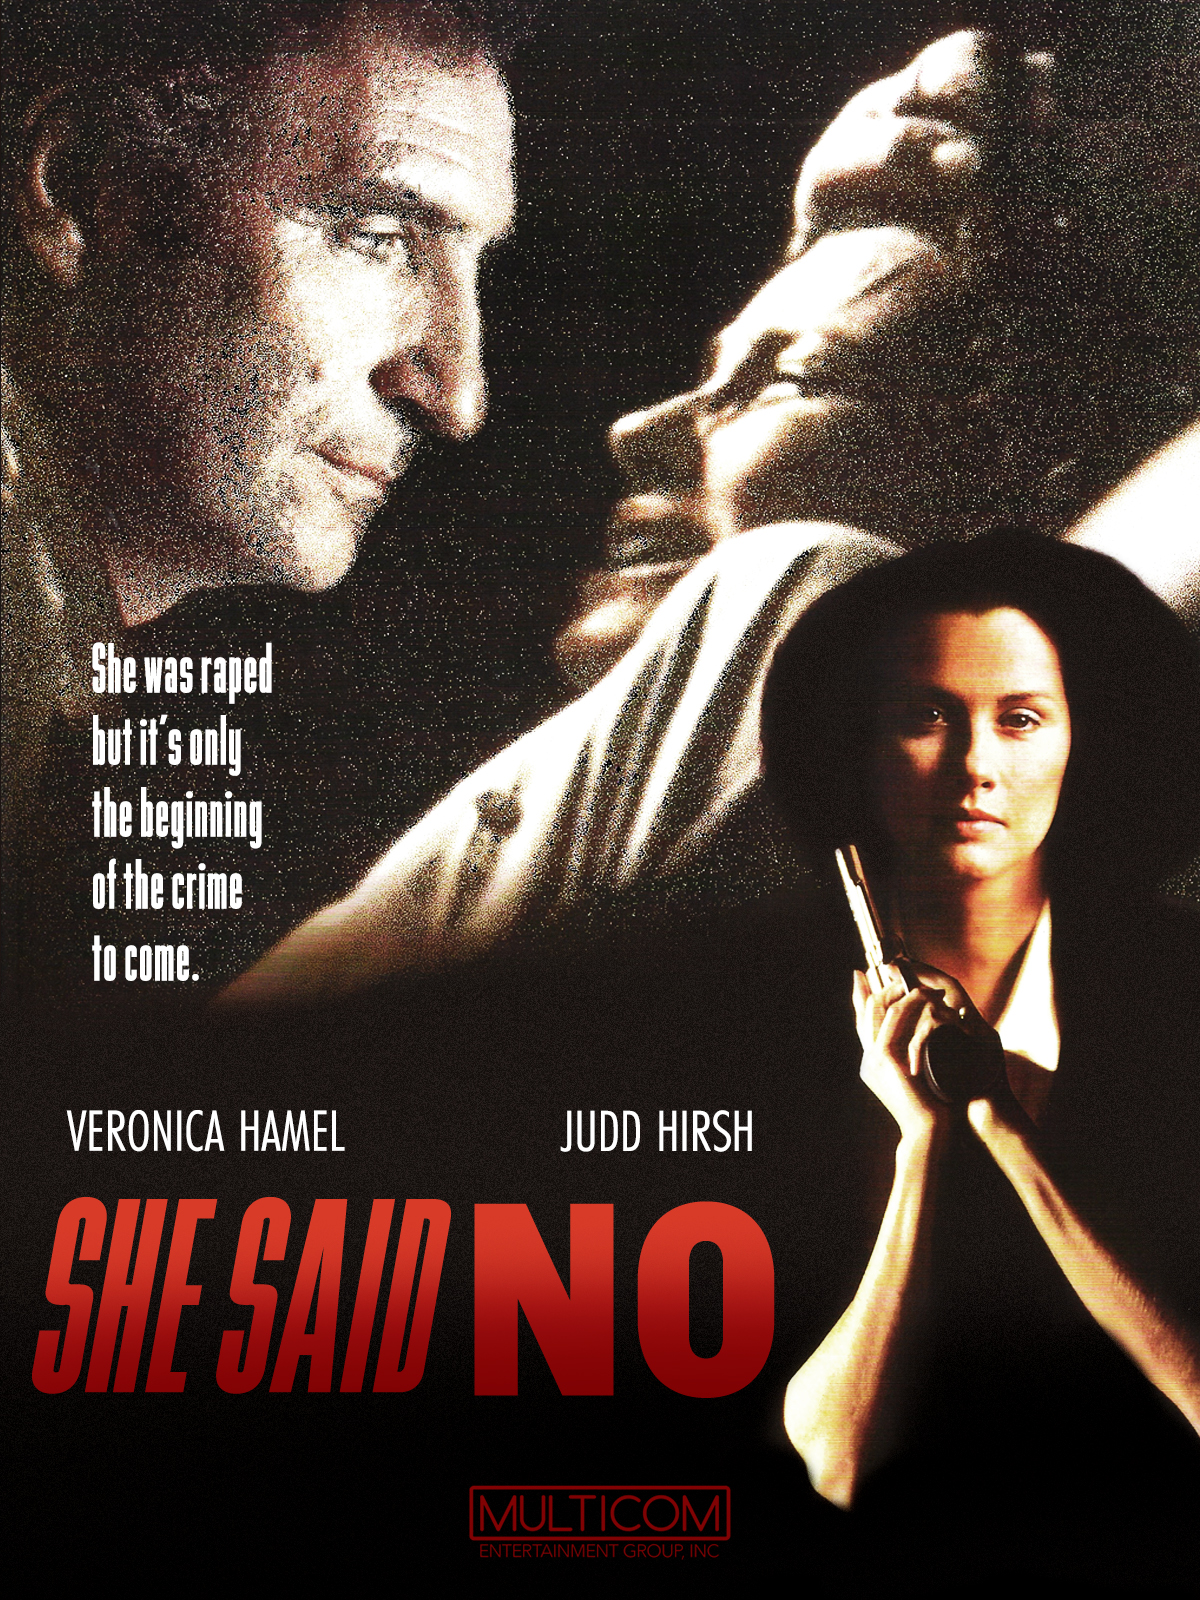 She Said No (1990) Screenshot 1 